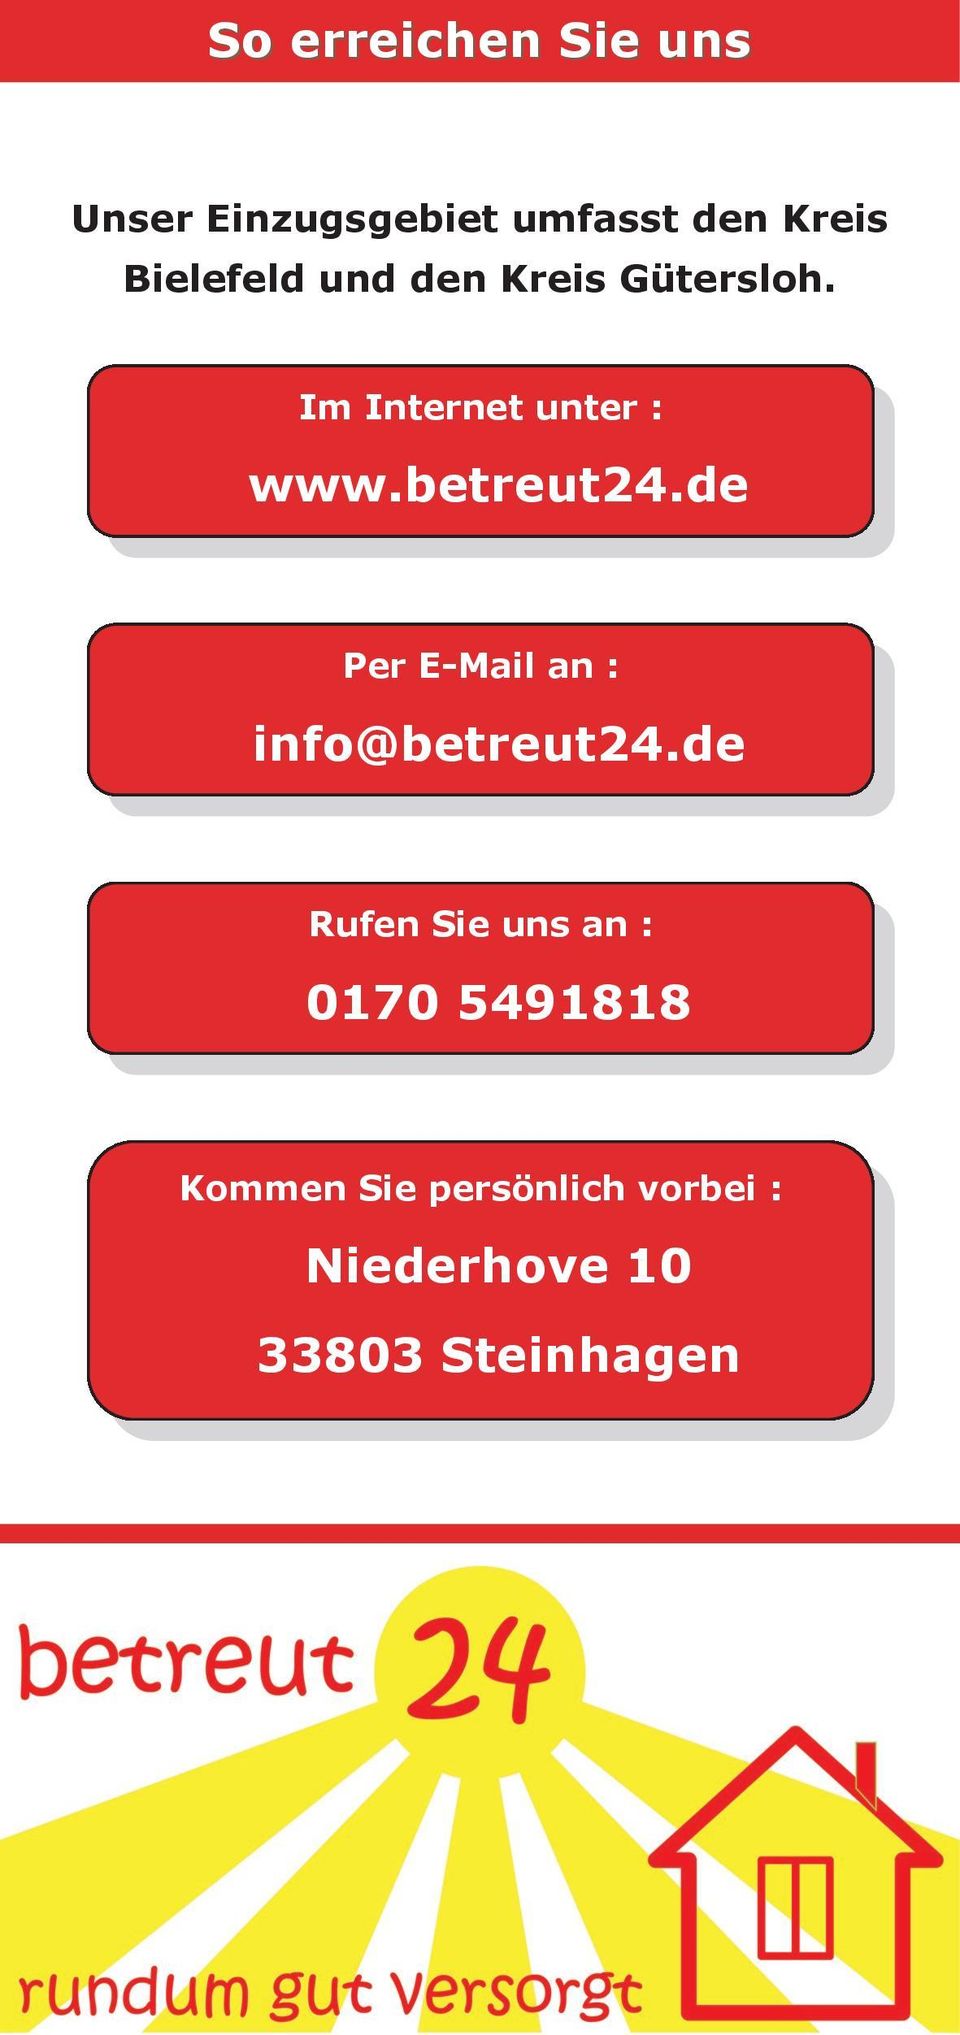 betreut24.de Per E-Mail an : info@betreut24.